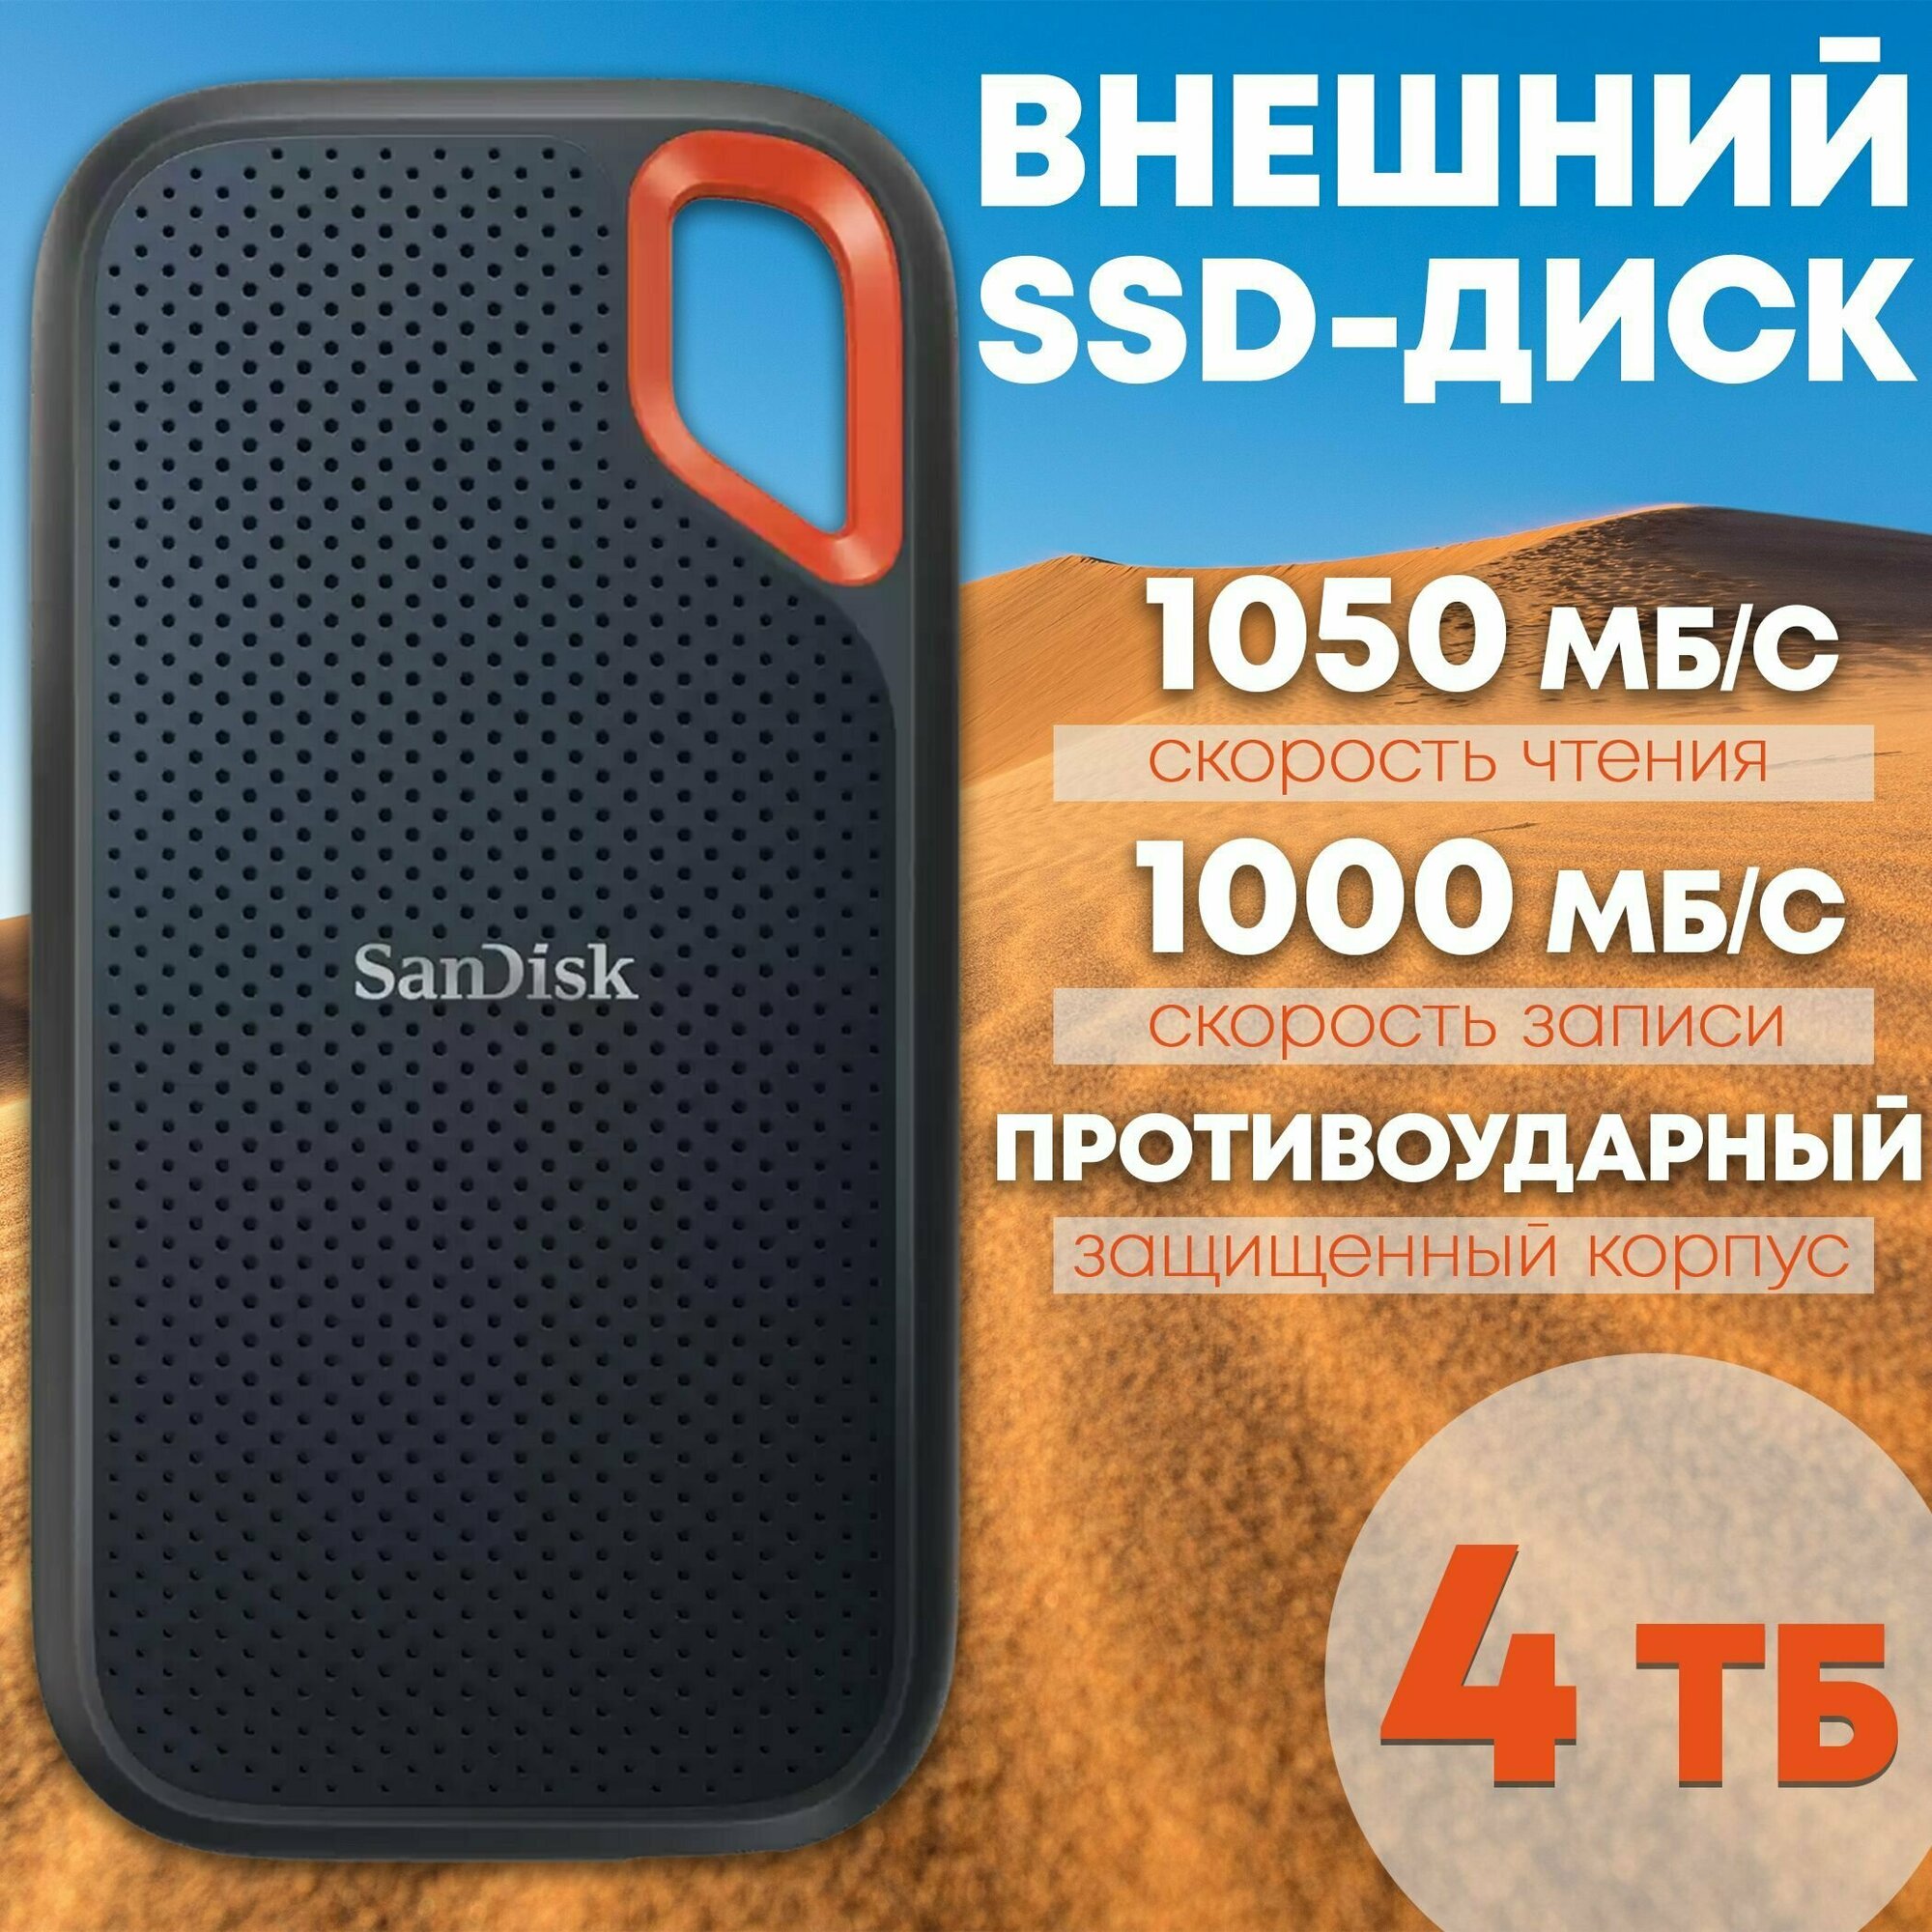 Внешний SSD диск SanDisk Extreme Portable V2 SSD 4TB USB 3.2 Gen 2 (SDSSDE61-4T00-G25) - твердотельный накопитель для ноутбука 4 ТБ - жесткий диск - накопители внешние для ПК, компьютера и смартфона